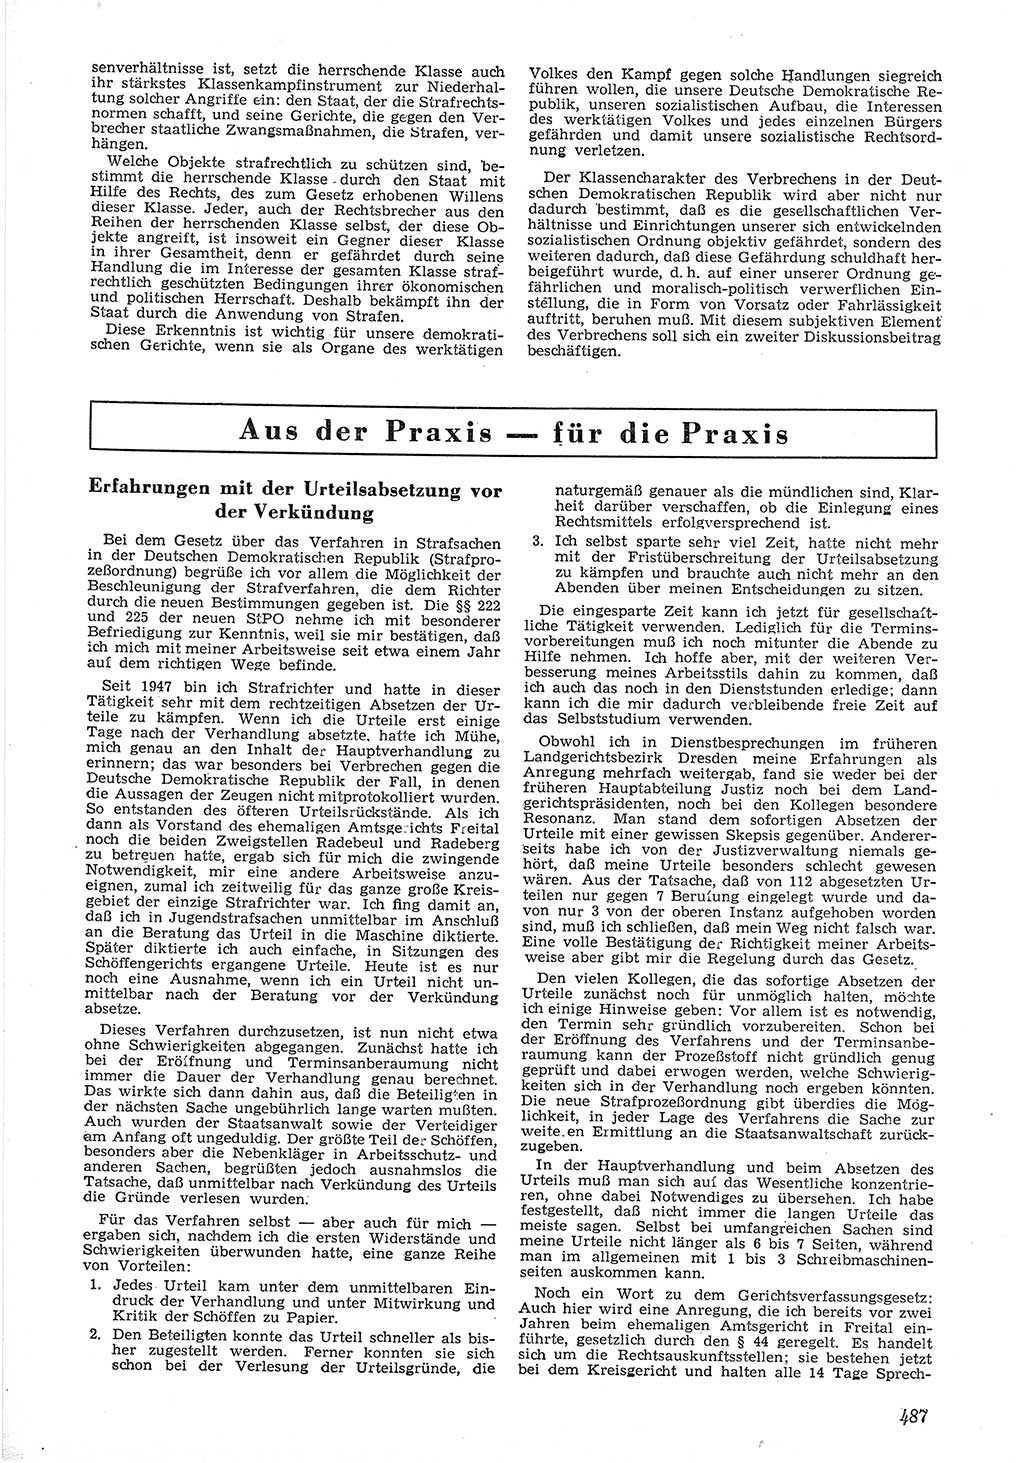 Neue Justiz (NJ), Zeitschrift für Recht und Rechtswissenschaft [Deutsche Demokratische Republik (DDR)], 6. Jahrgang 1952, Seite 487 (NJ DDR 1952, S. 487)